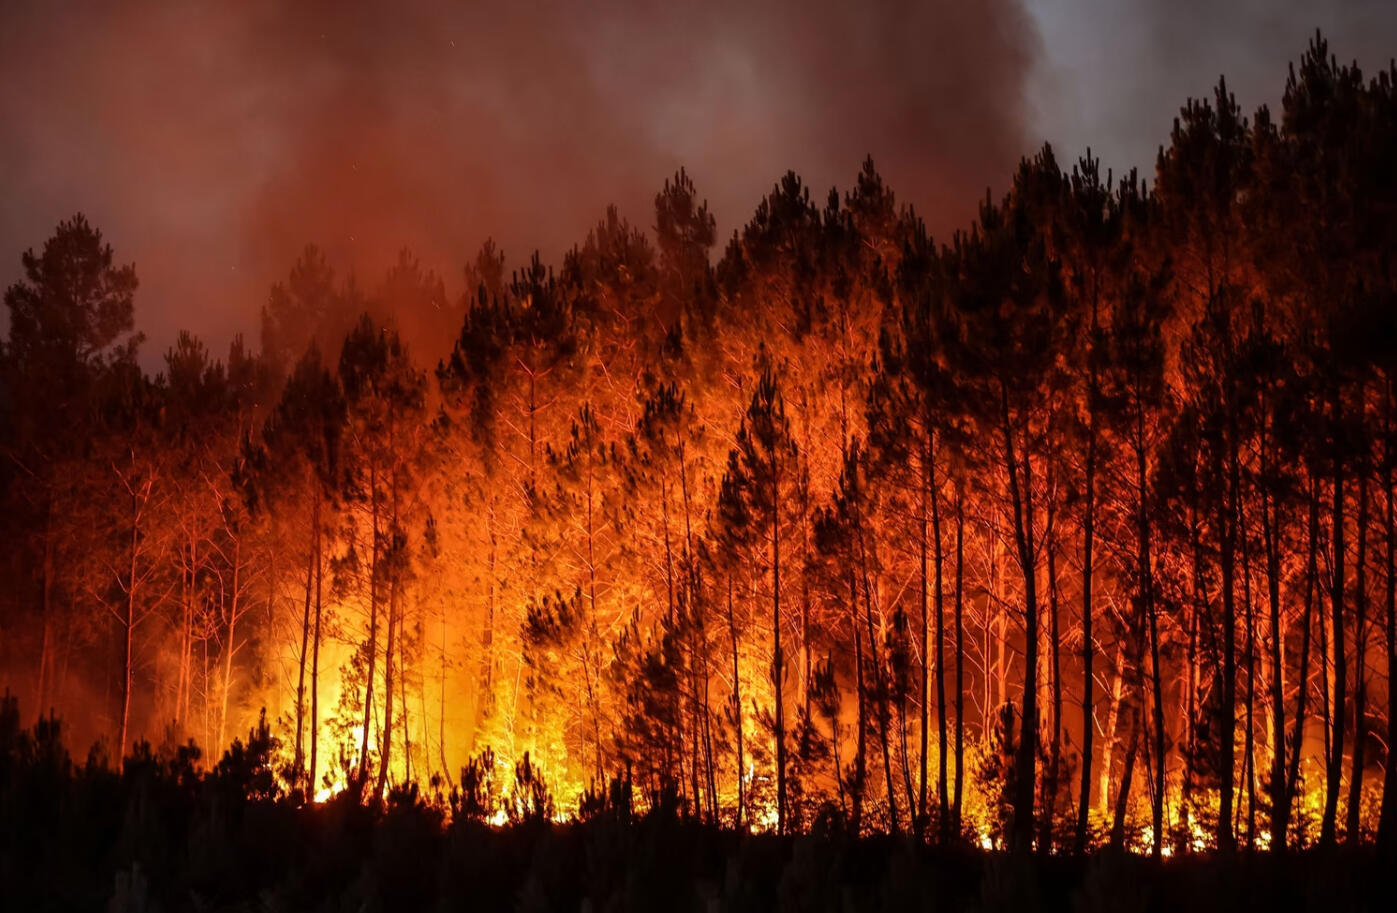 חם שם בחוץ: תמונות מהשריפות באירופה